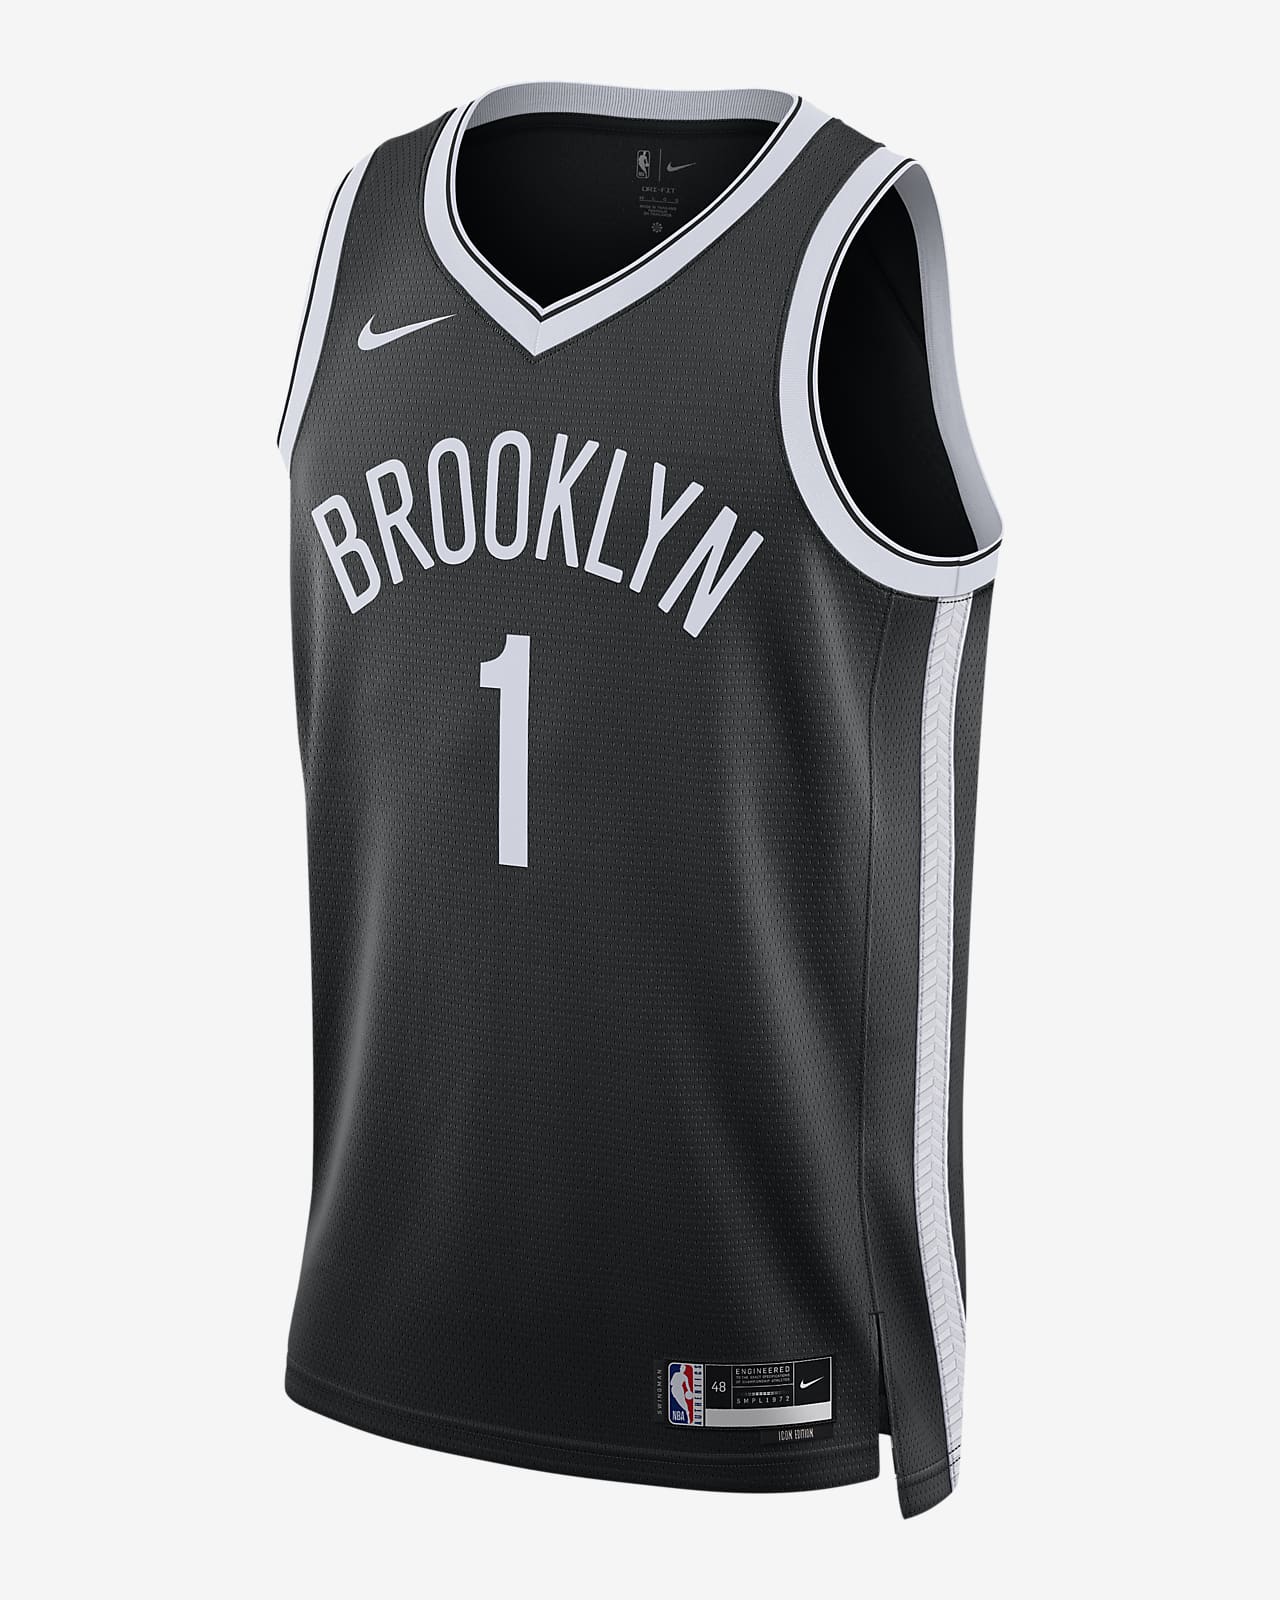 2022/23 赛季布鲁克林篮网队 Icon Edition Nike Dri-FIT NBA Swingman Jersey 男子速干球衣